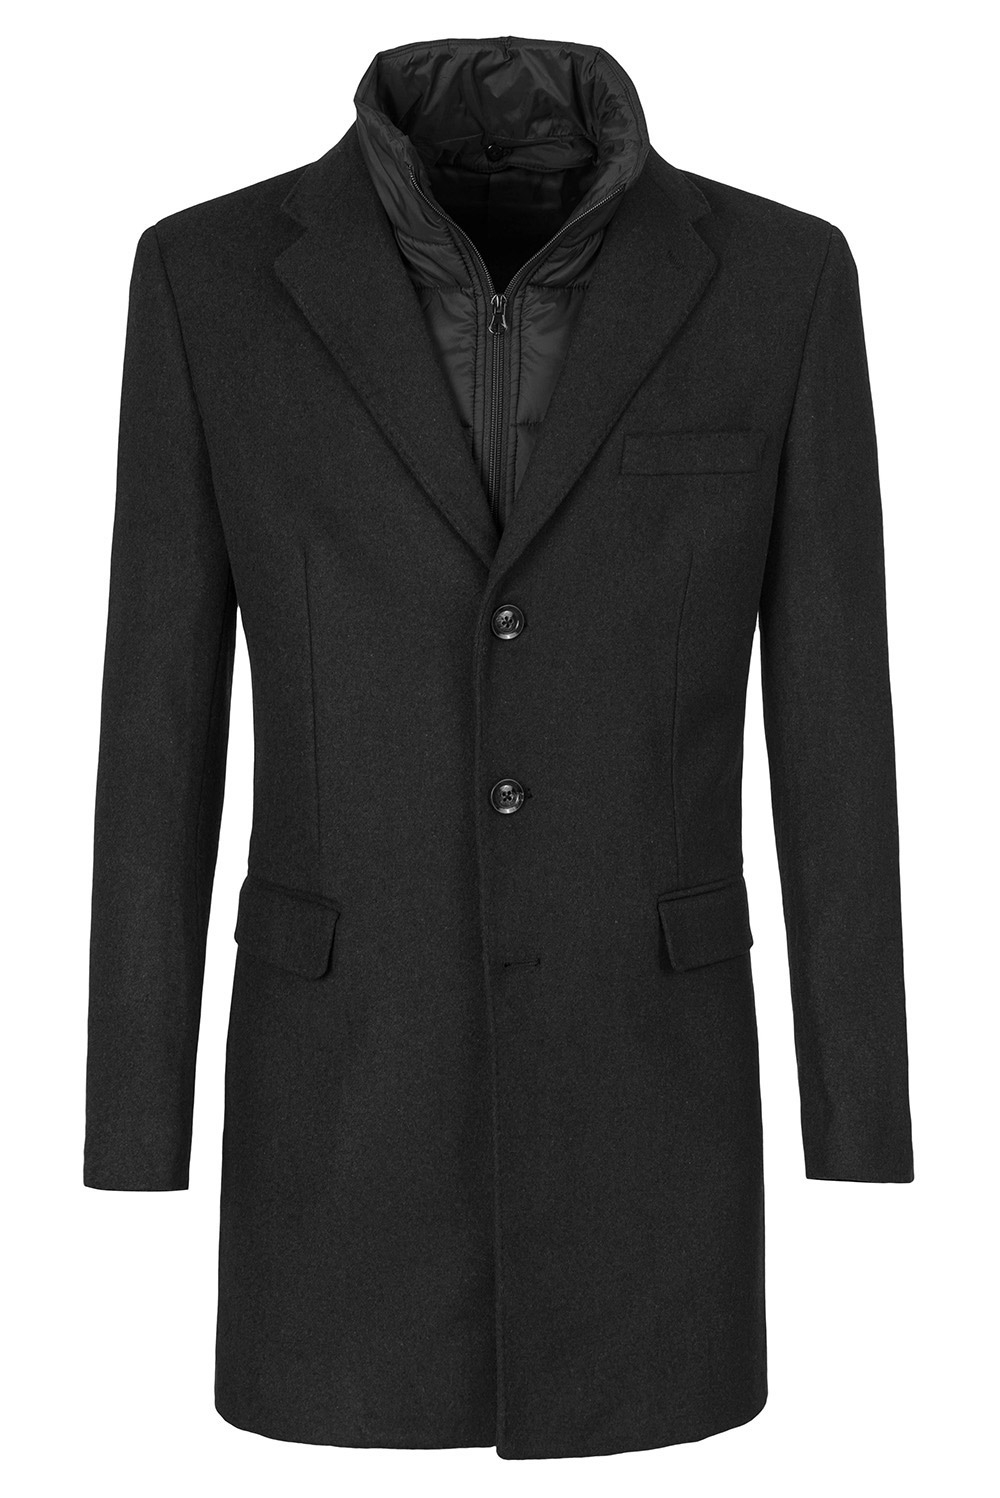 Palton negru uni 2